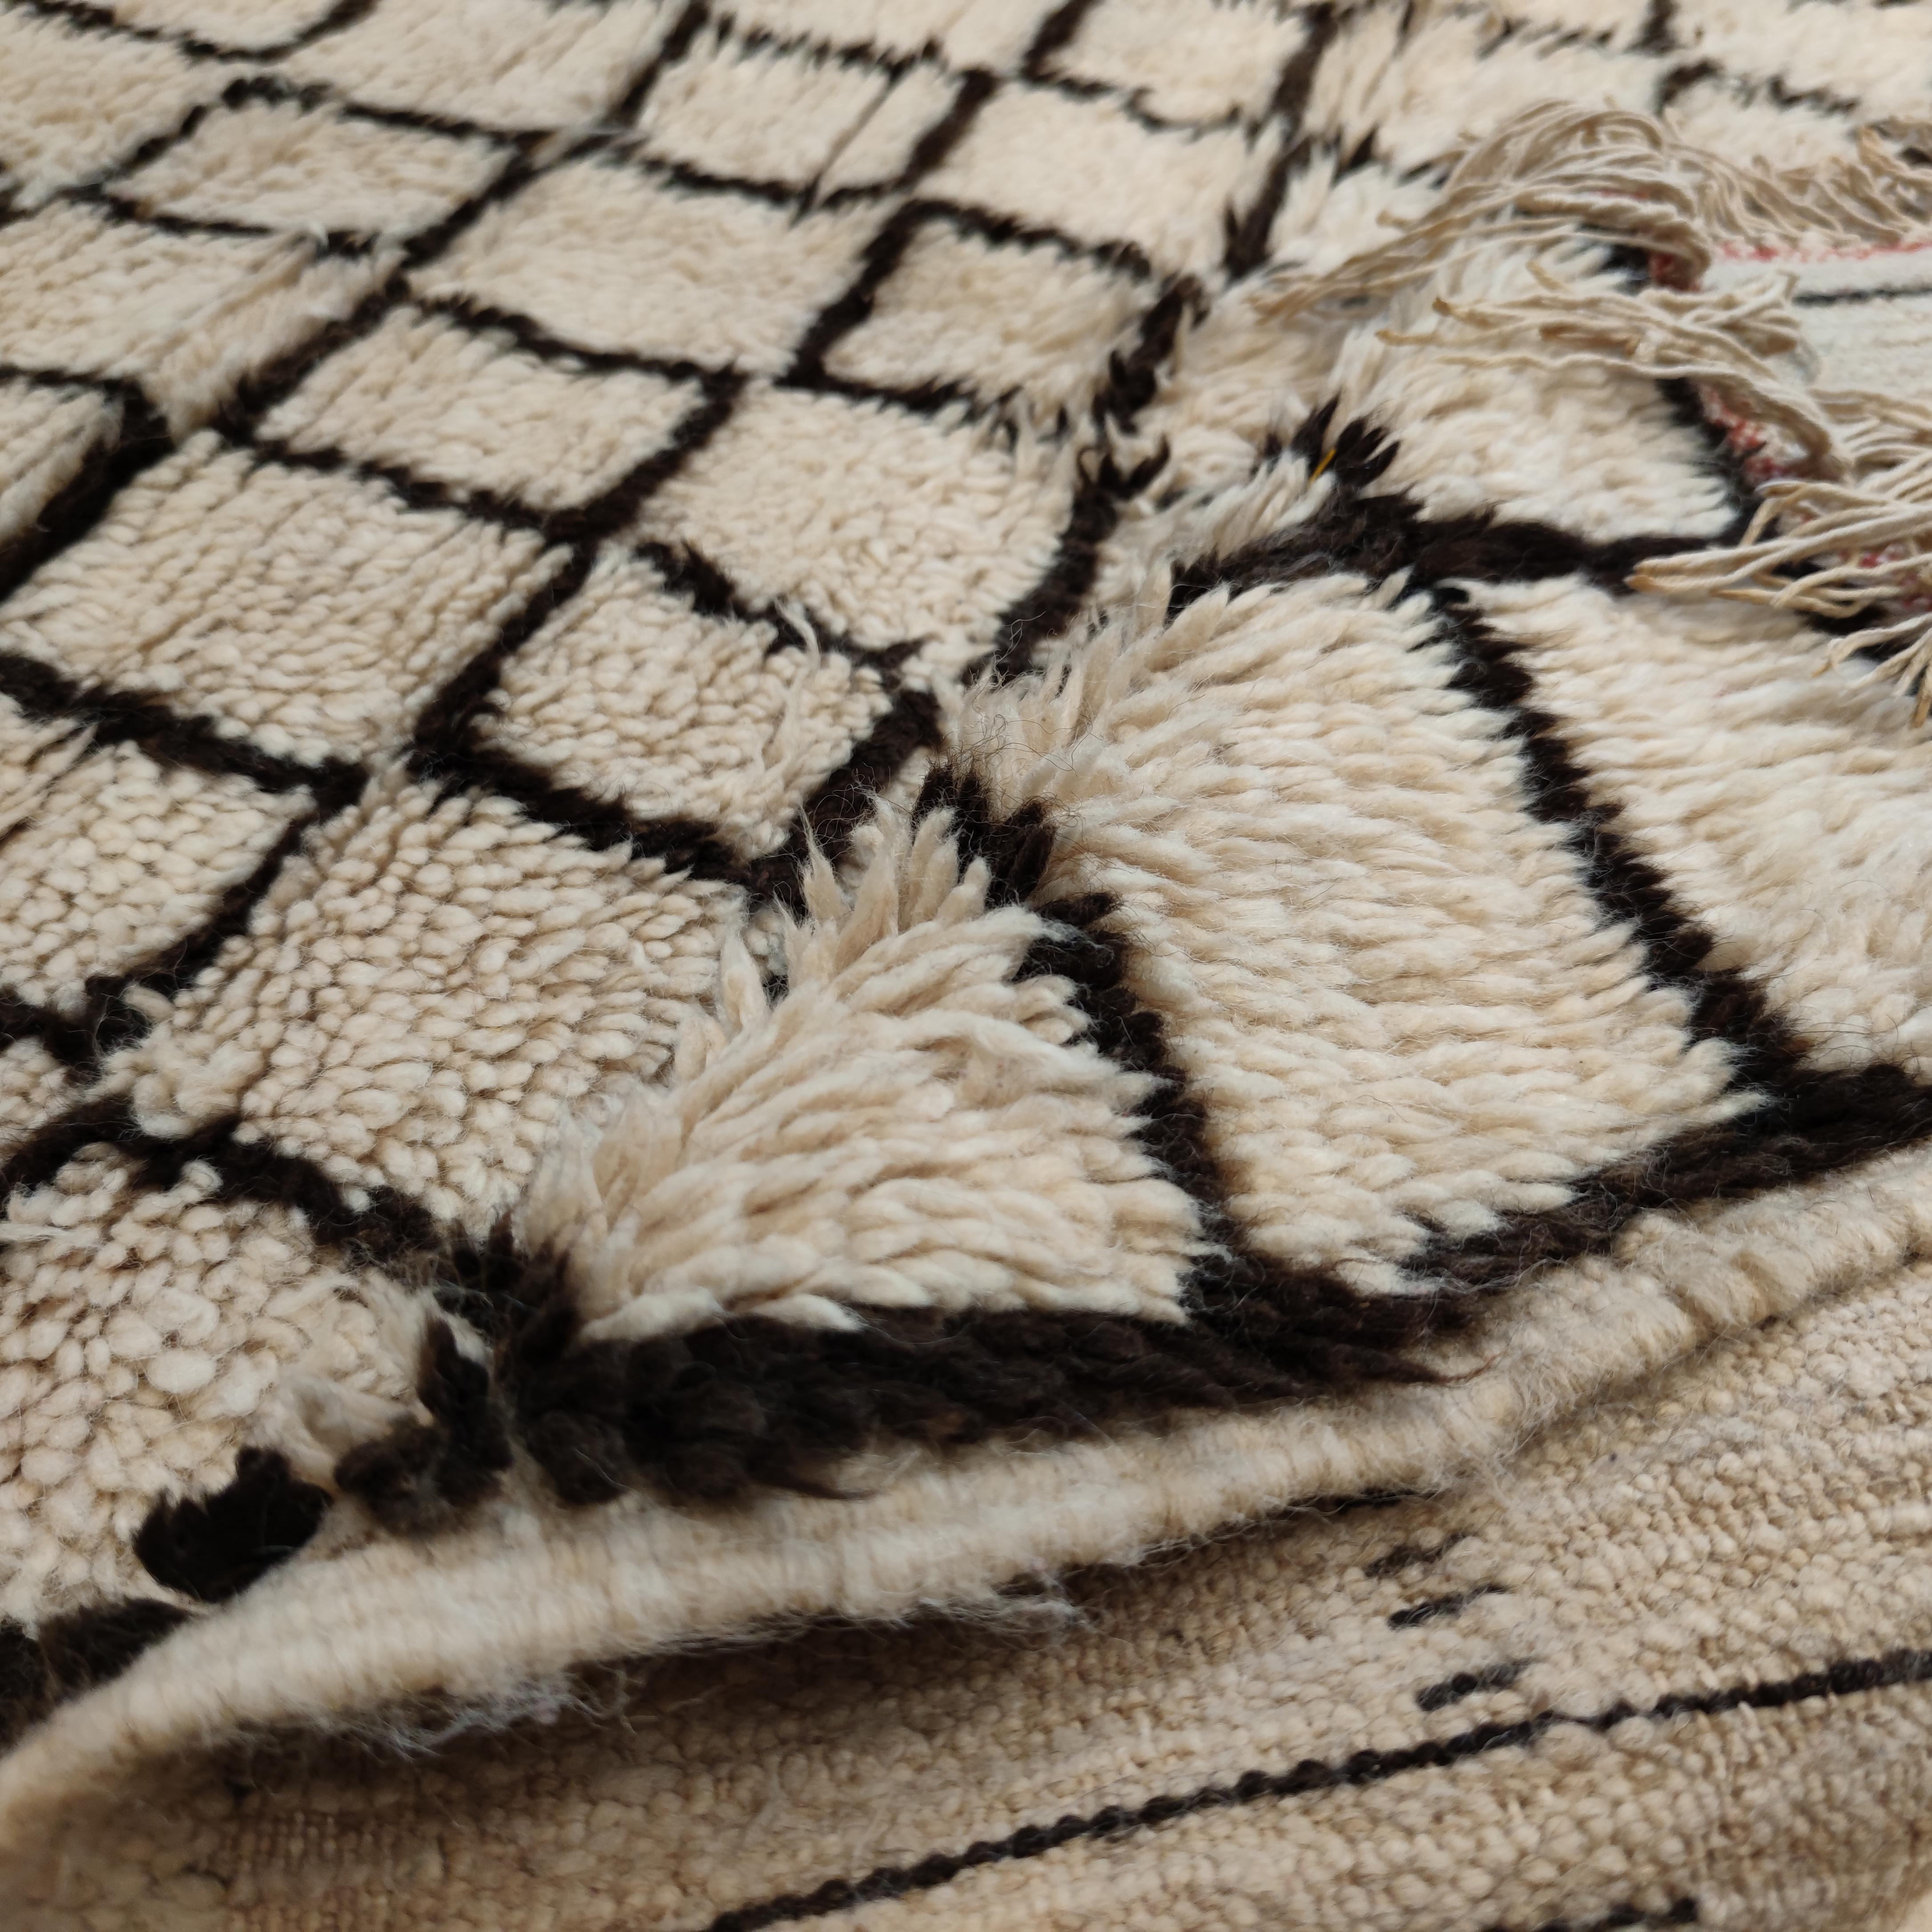 Die Teppiche aus der Region Azilal im zentralen Hohen Atlas Marokkos sind eine relativ neue Entdeckung. Sie unterscheiden sich von den weißgrundigen Teppichen des Mittleren Atlas der Beni Ouarain und der Beni Mguild vor allem durch ihre schlaffe